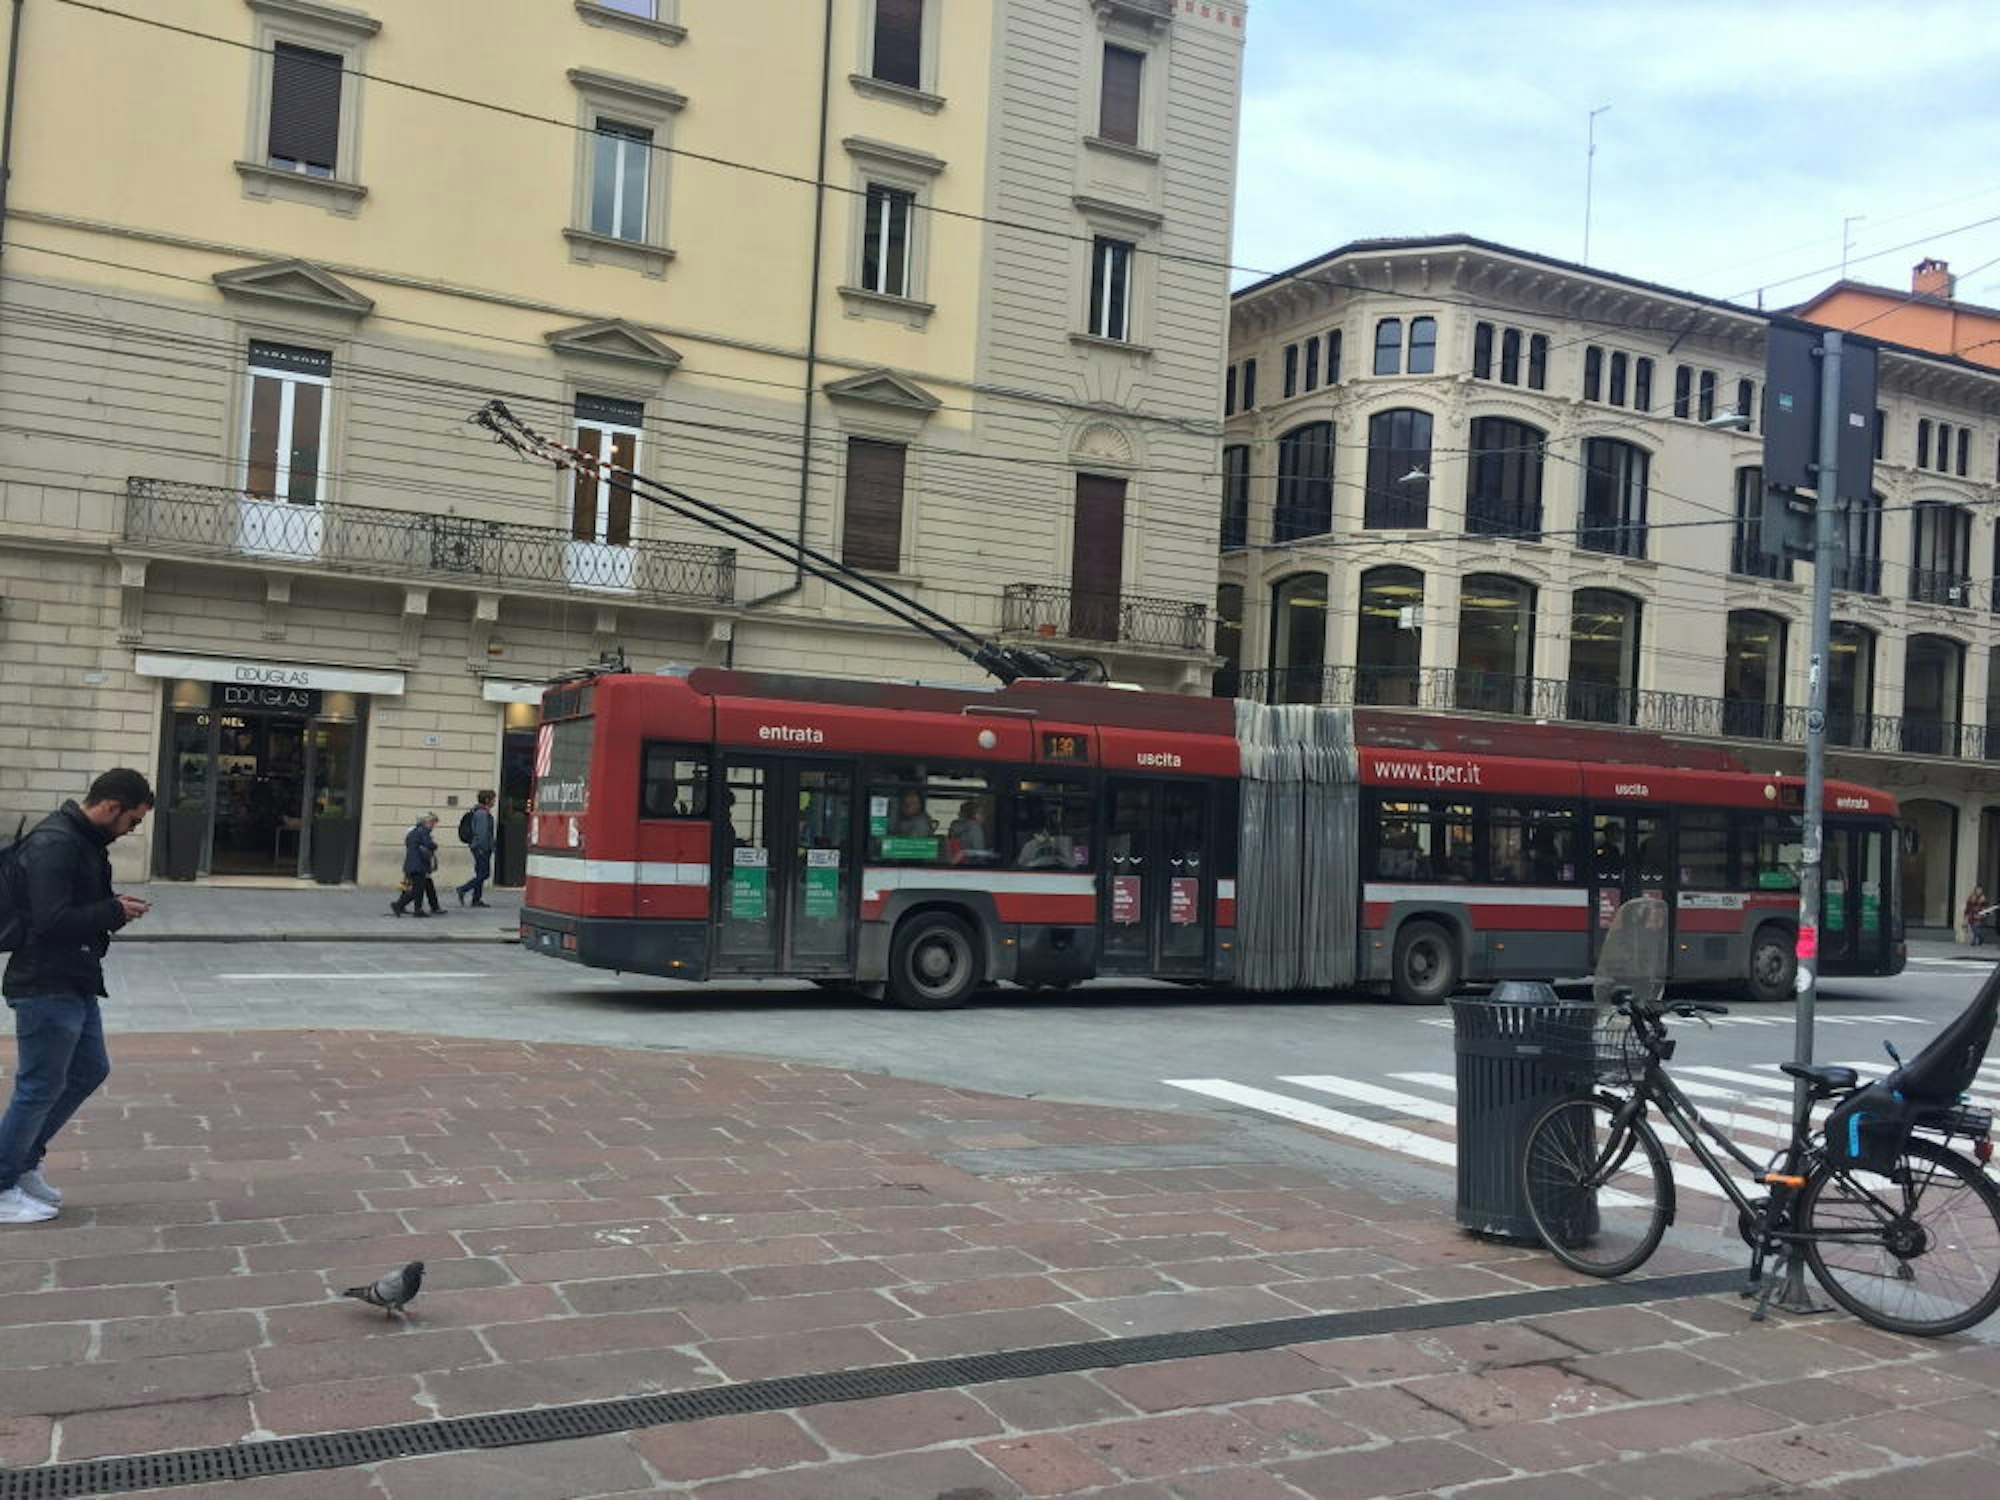 Busse mit Oberleitung sind unter anderem in der italienischen Stadt Bologna und in Solingen unterwegs.